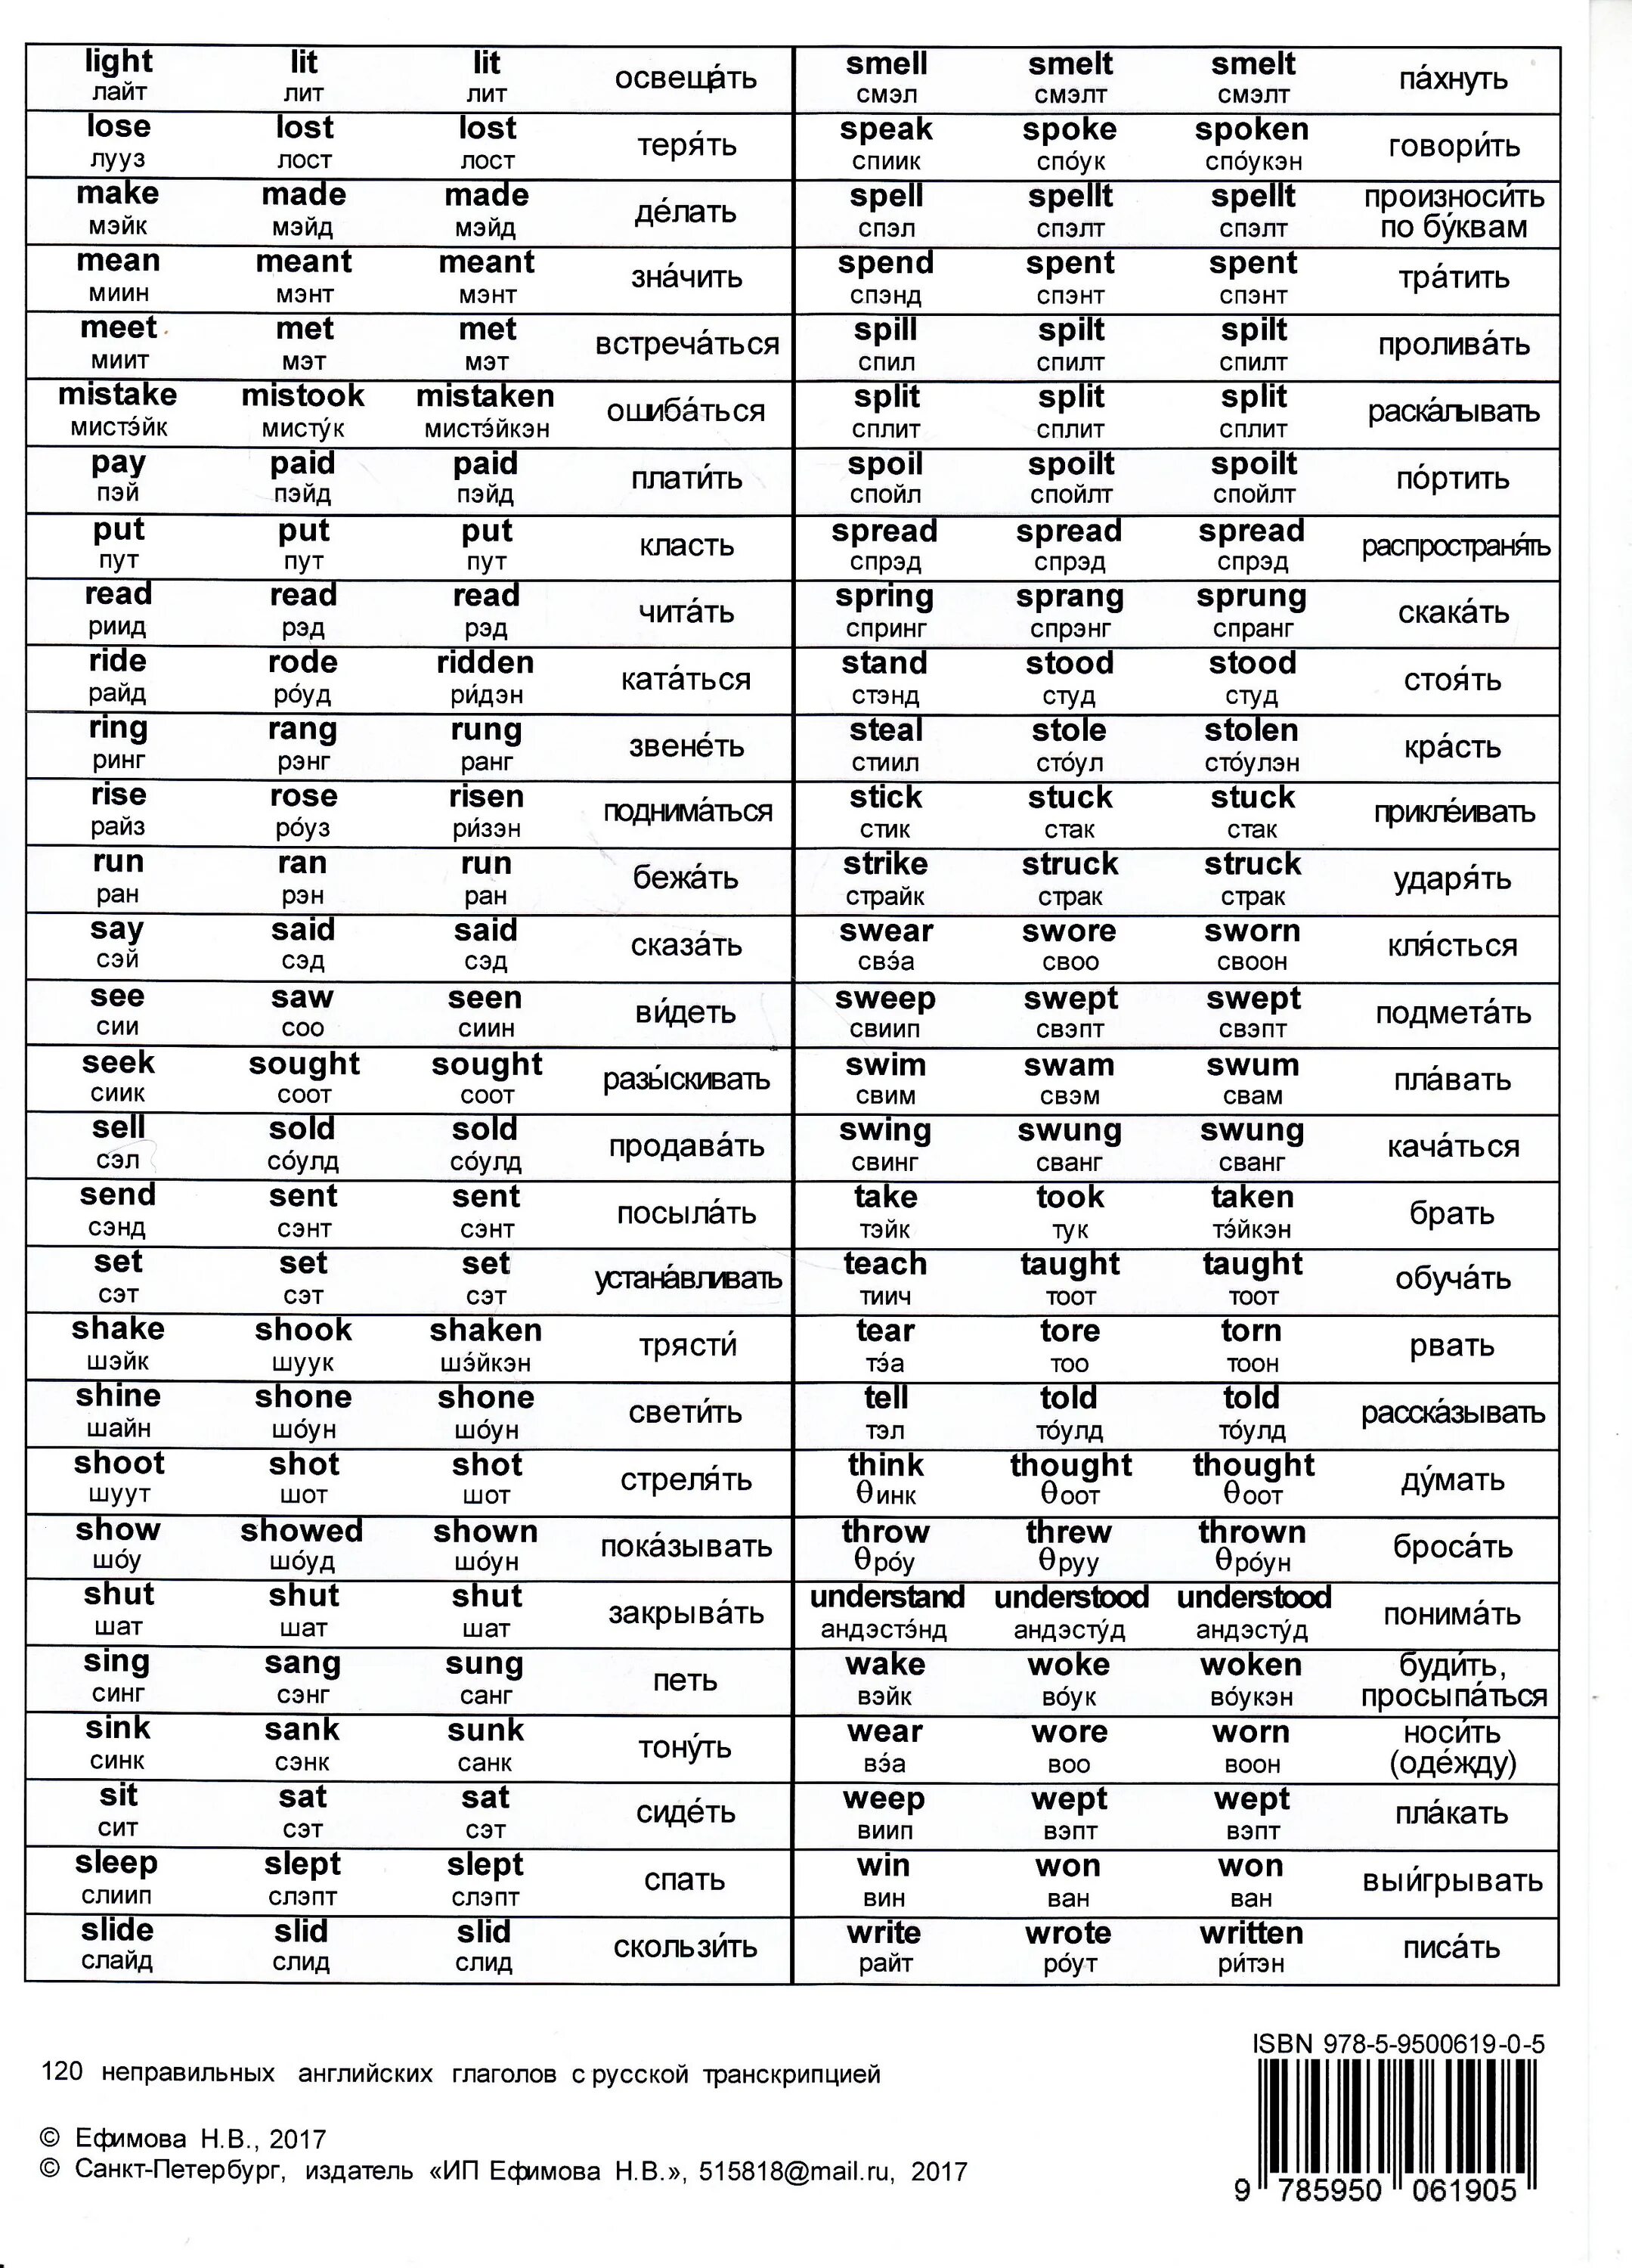 Английские глаголы аудио. Таблица неправильных глаголов англ. Таблица неправильных глаголов в англ языке. Таблица неправильных глаголов англ с переводом. Таблица неправильных глаголов с транскрипцией и переводом.